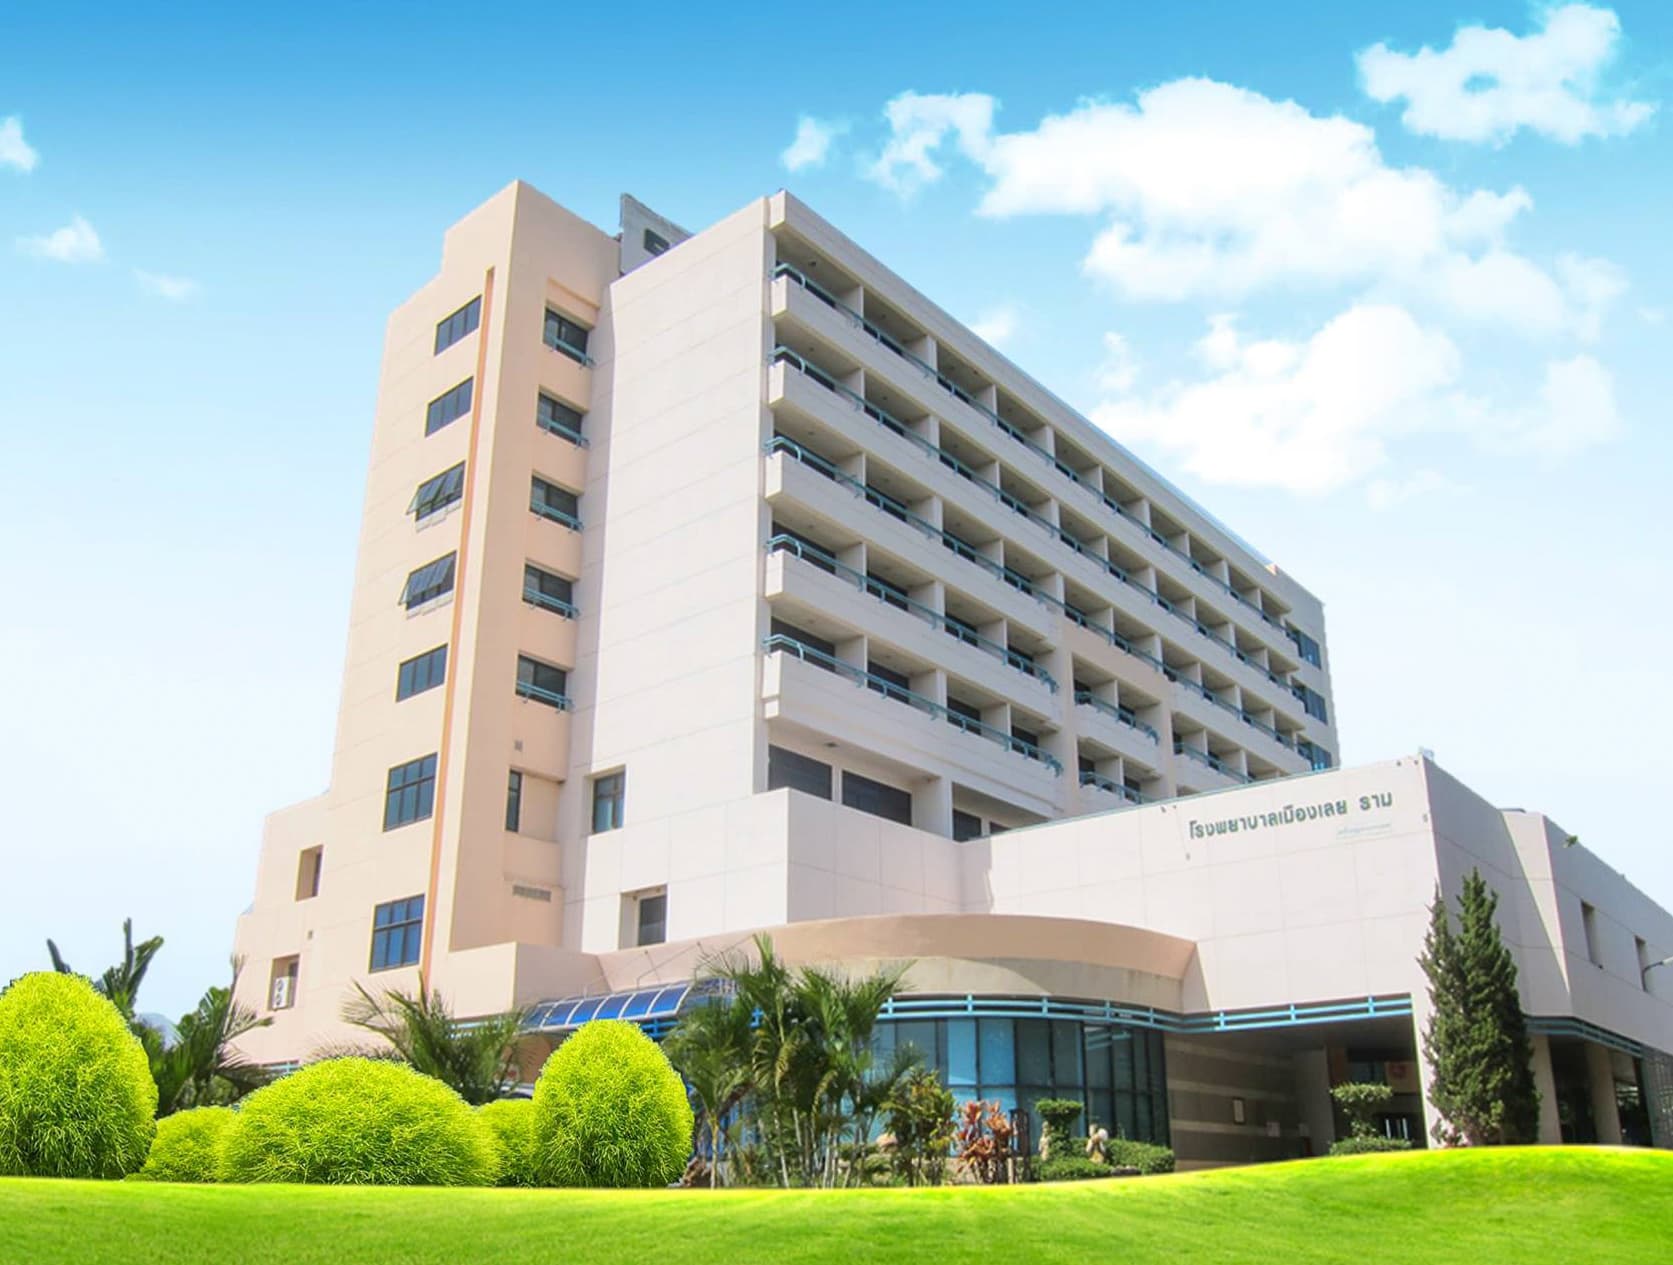 Muang-Loei-Ram Hospital